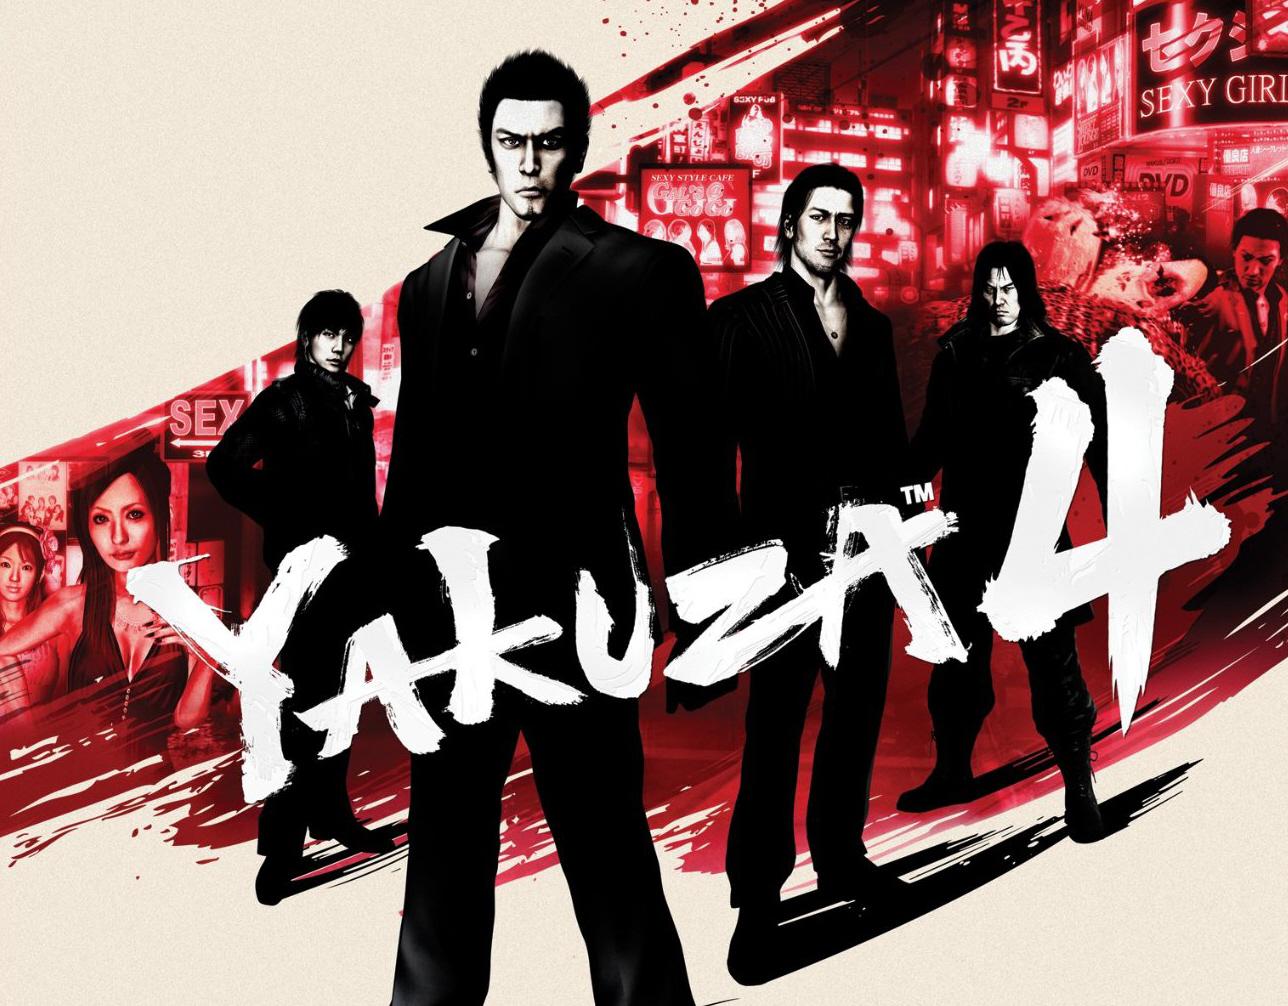 Yakuza 4 Wallpaper Pack, by Sharon Ray, Saturday 05th September 2015